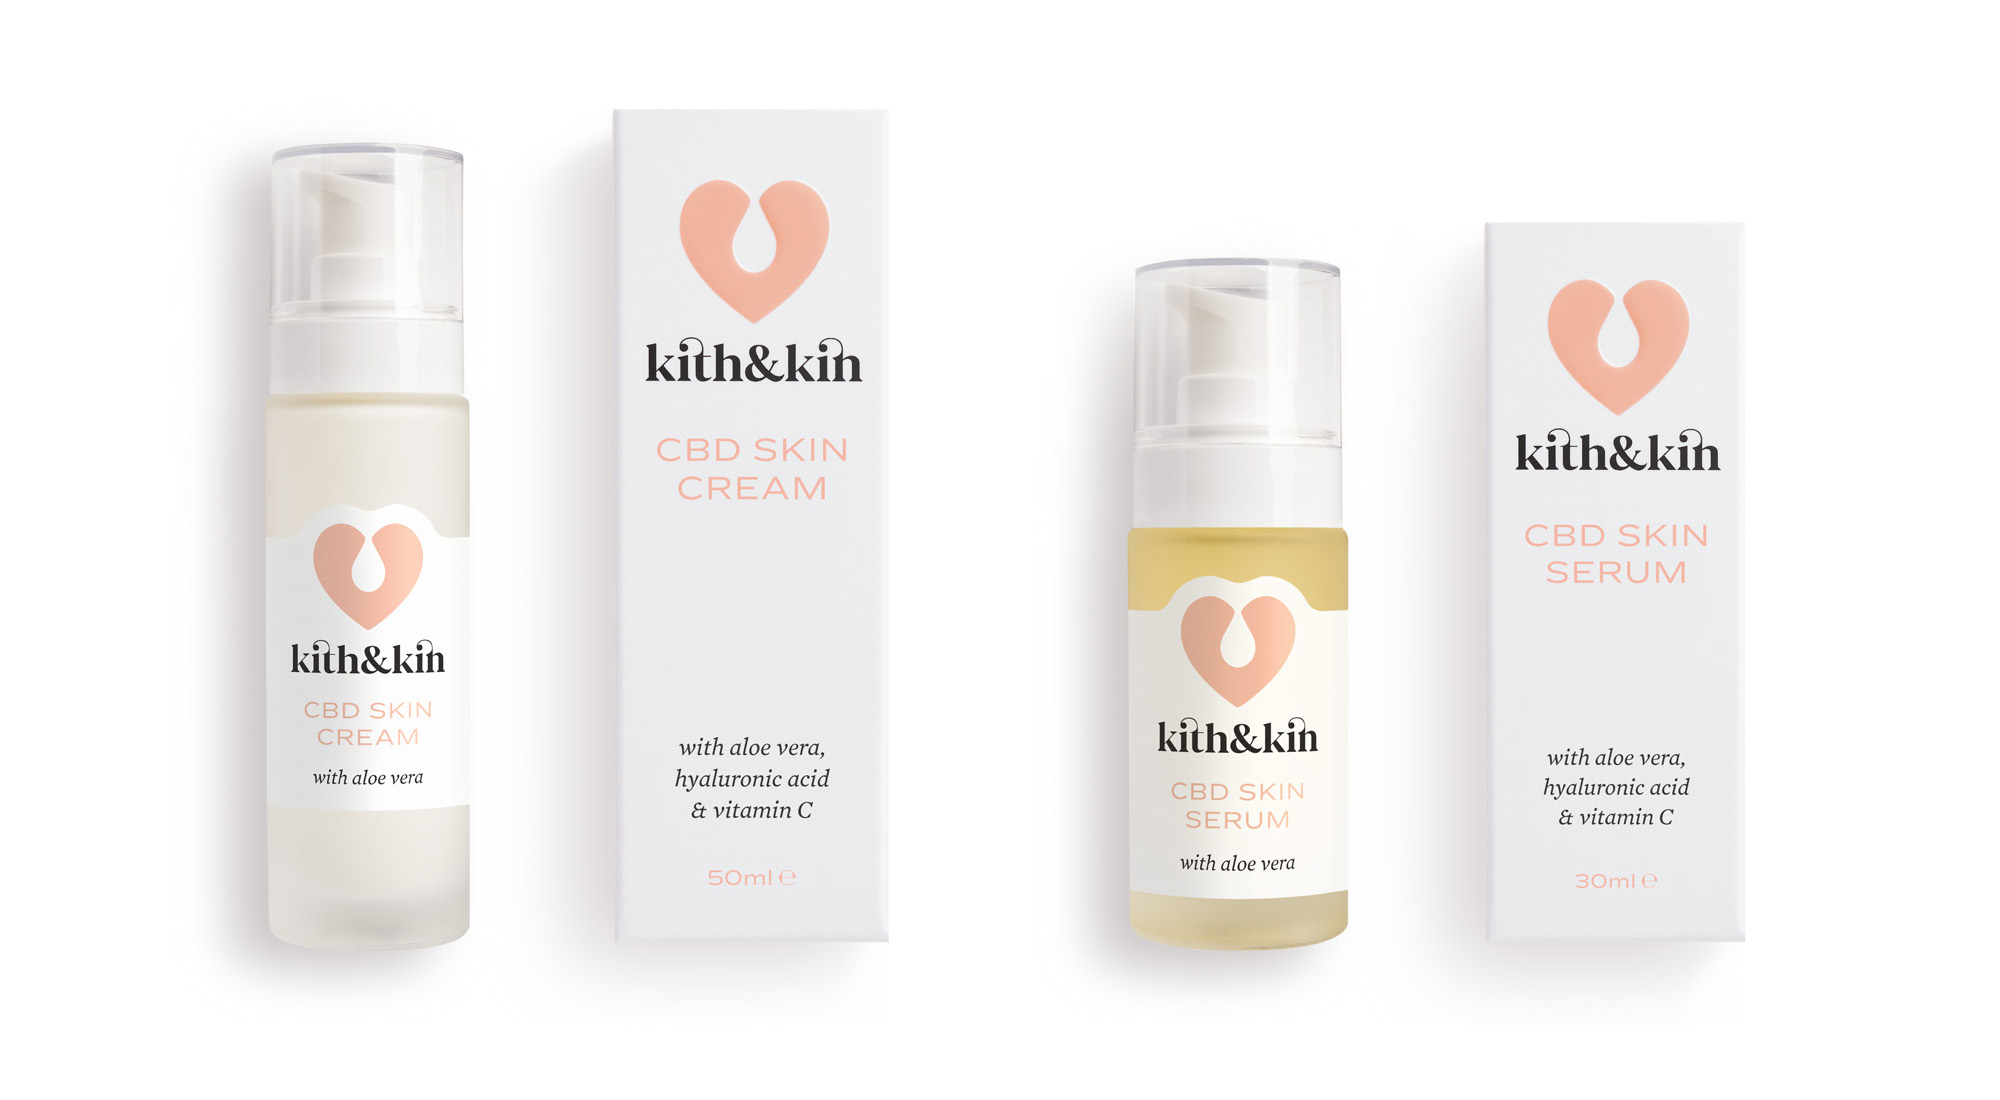 Kith & Kin CBD skin care packaging